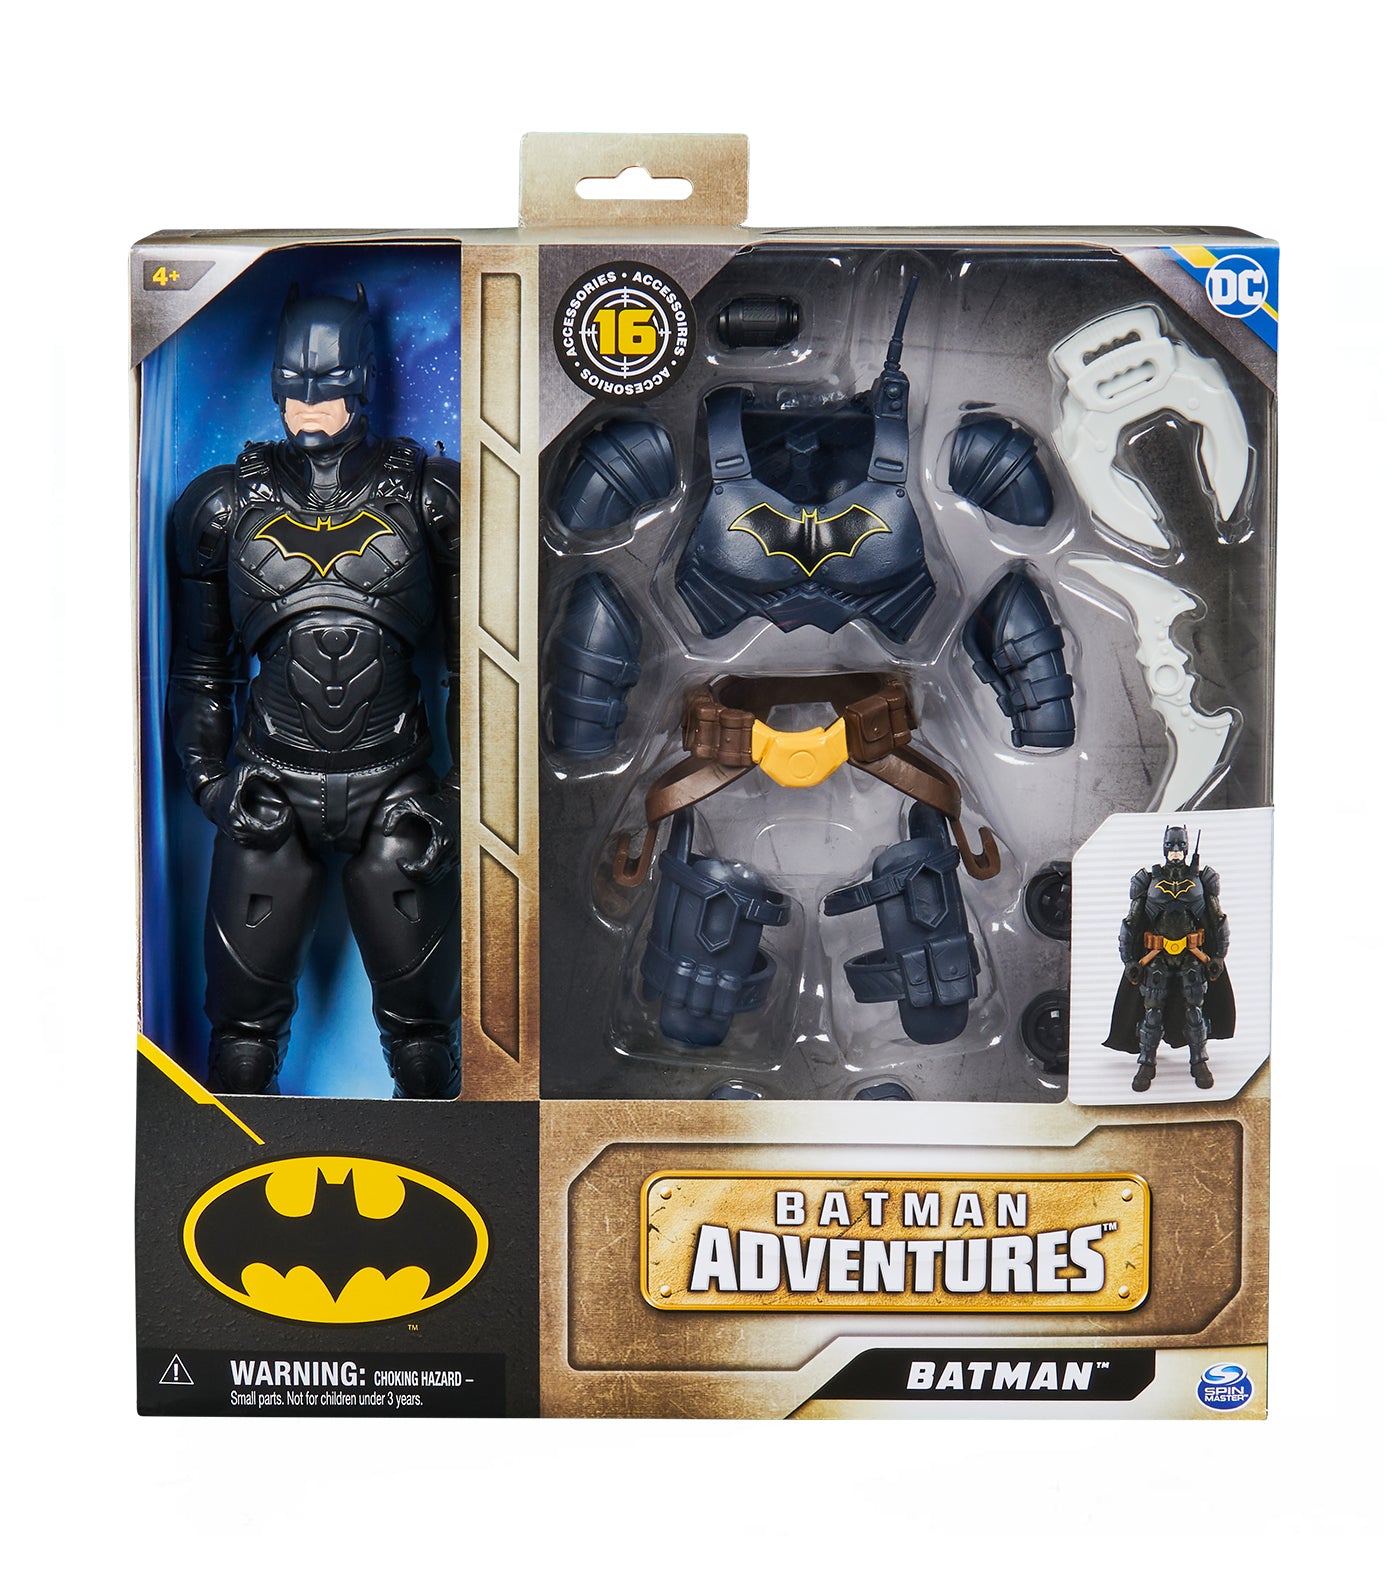 Batman Adventures Toy Set